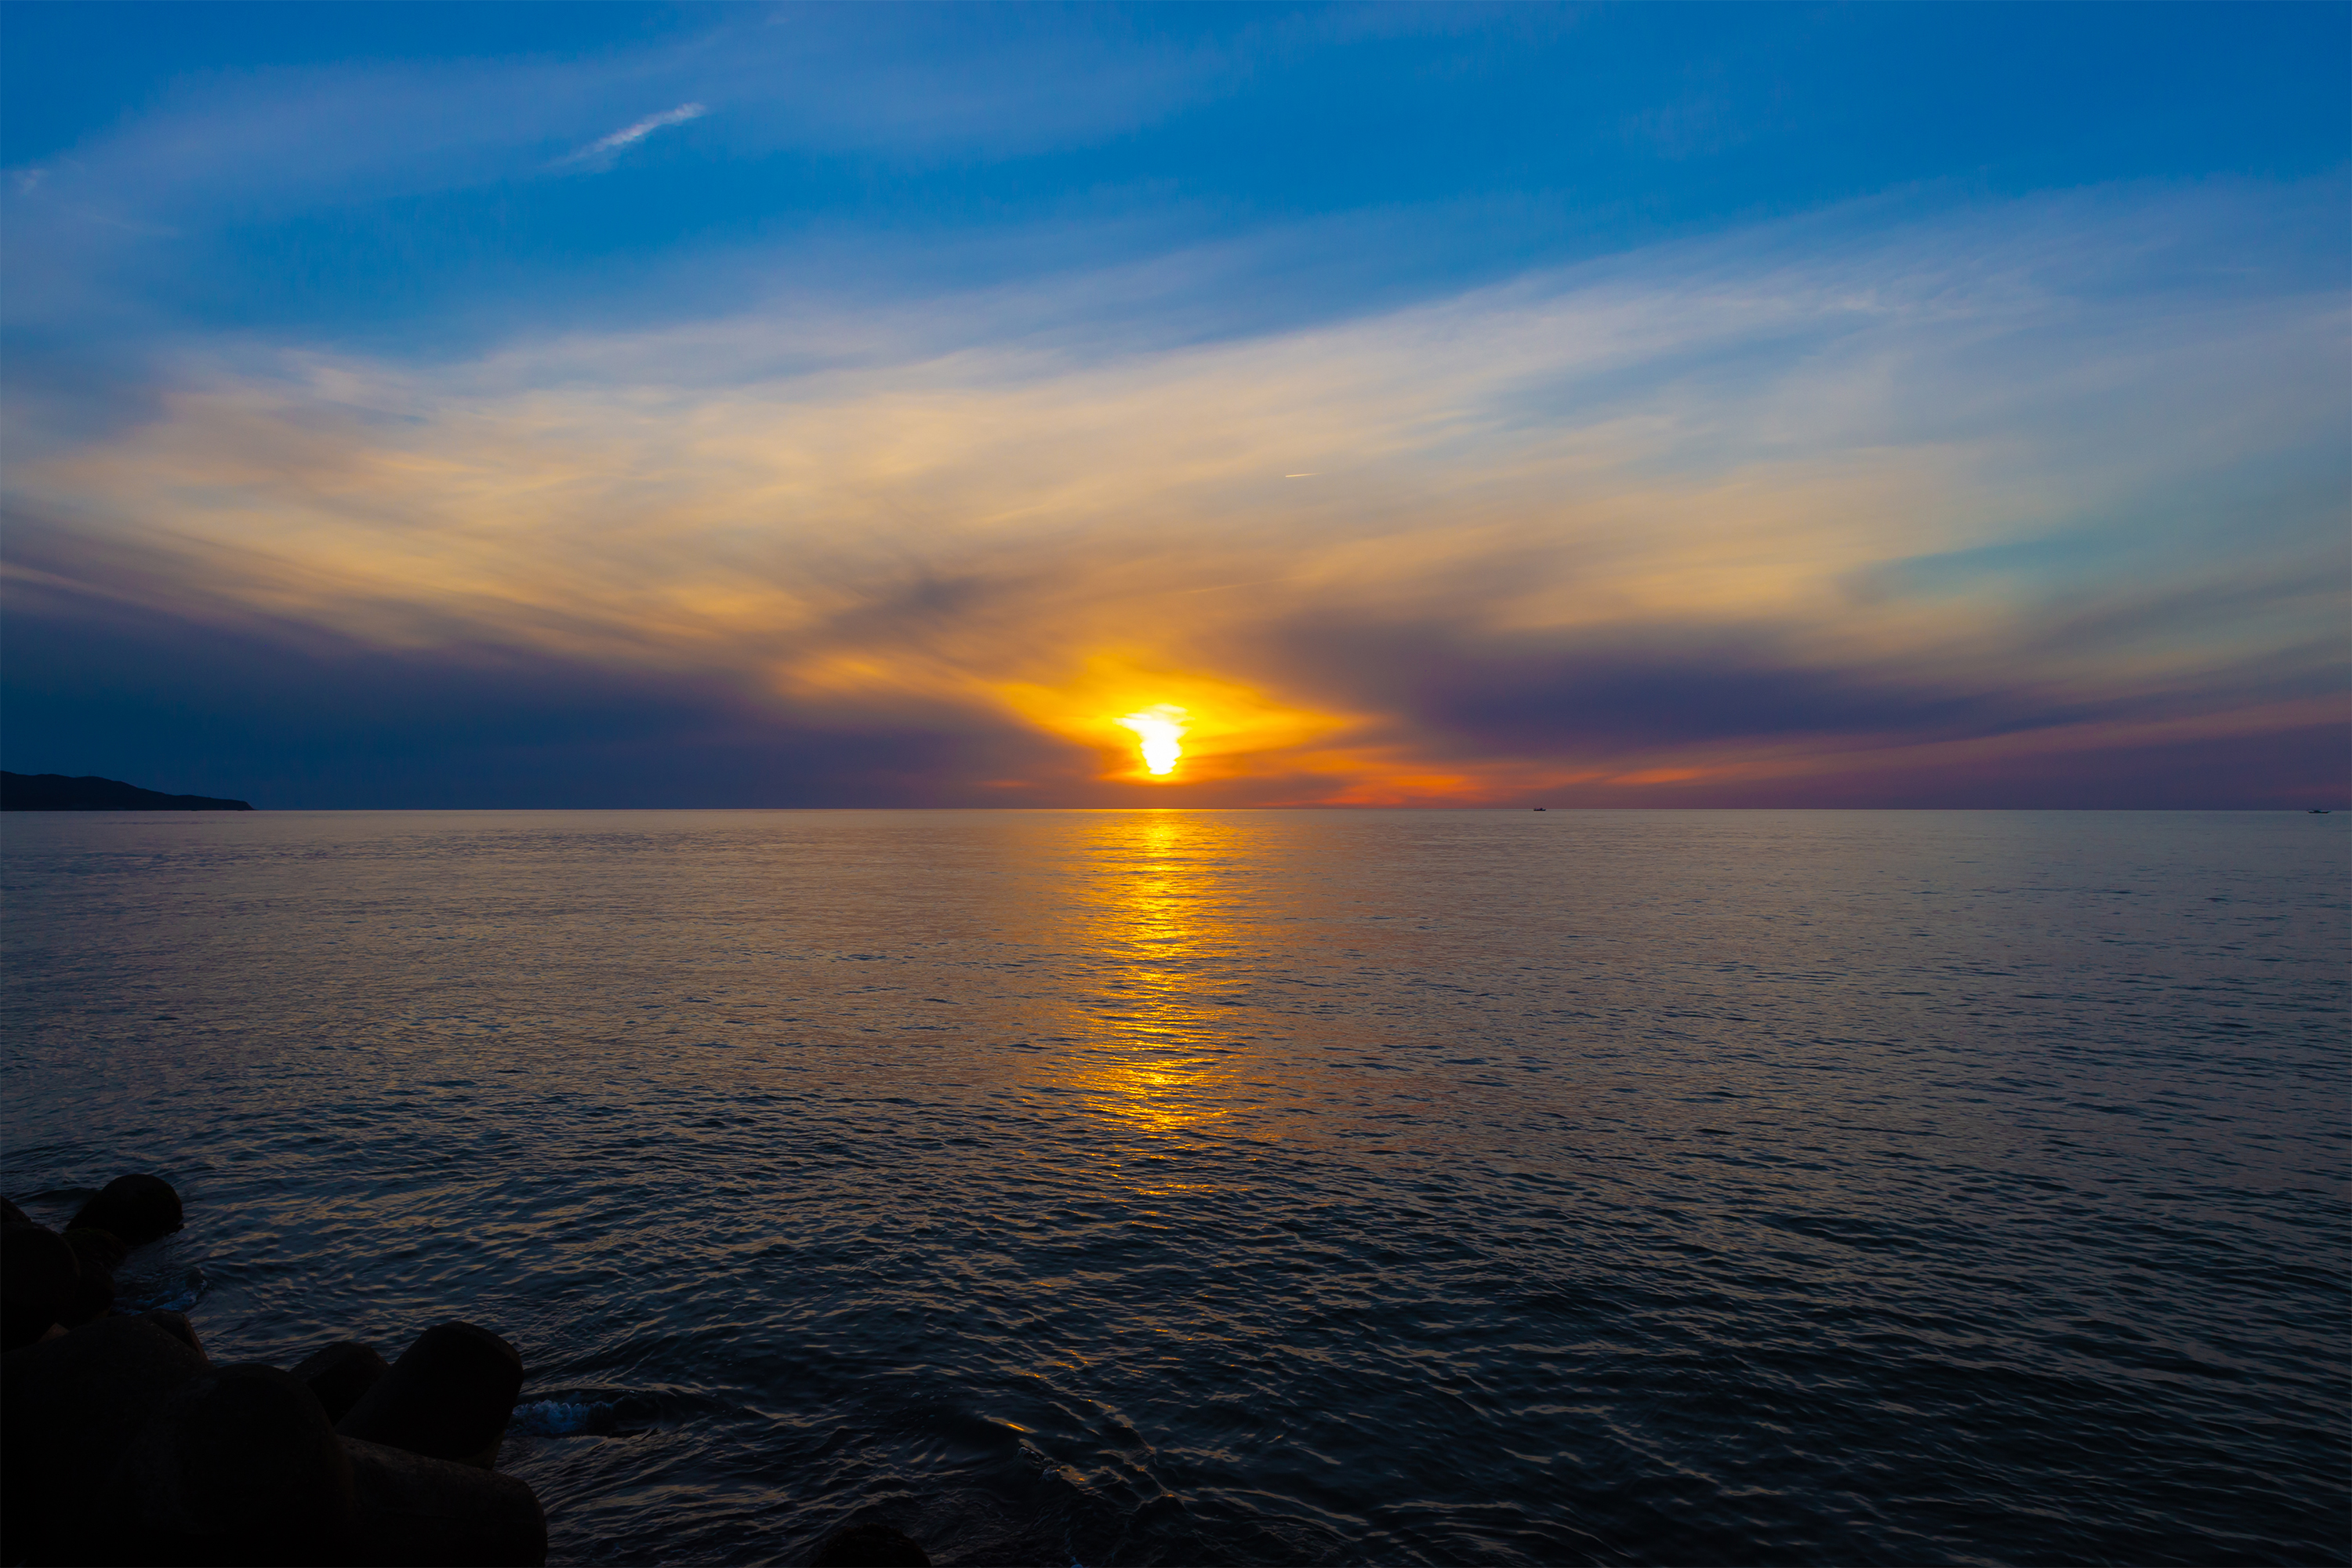 日本海に沈む夕日06 無料の高画質フリー写真素材 イメージズラボ